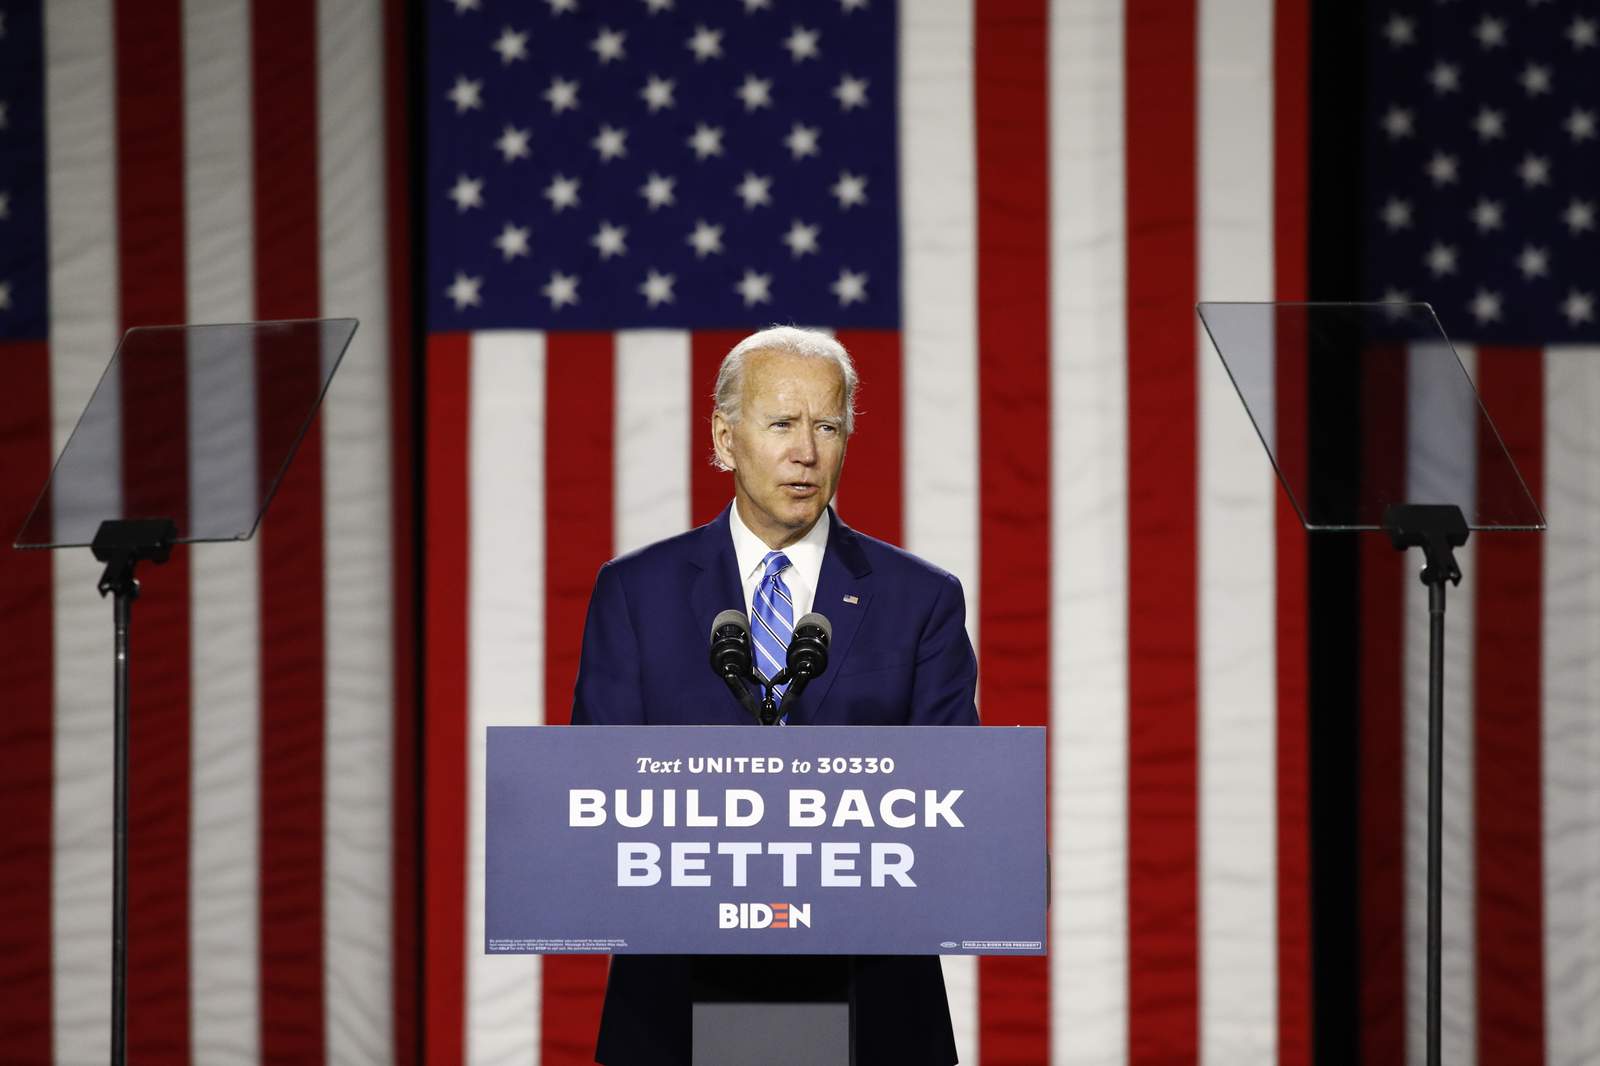 Biden says he's had intel briefings, warns of vote meddling